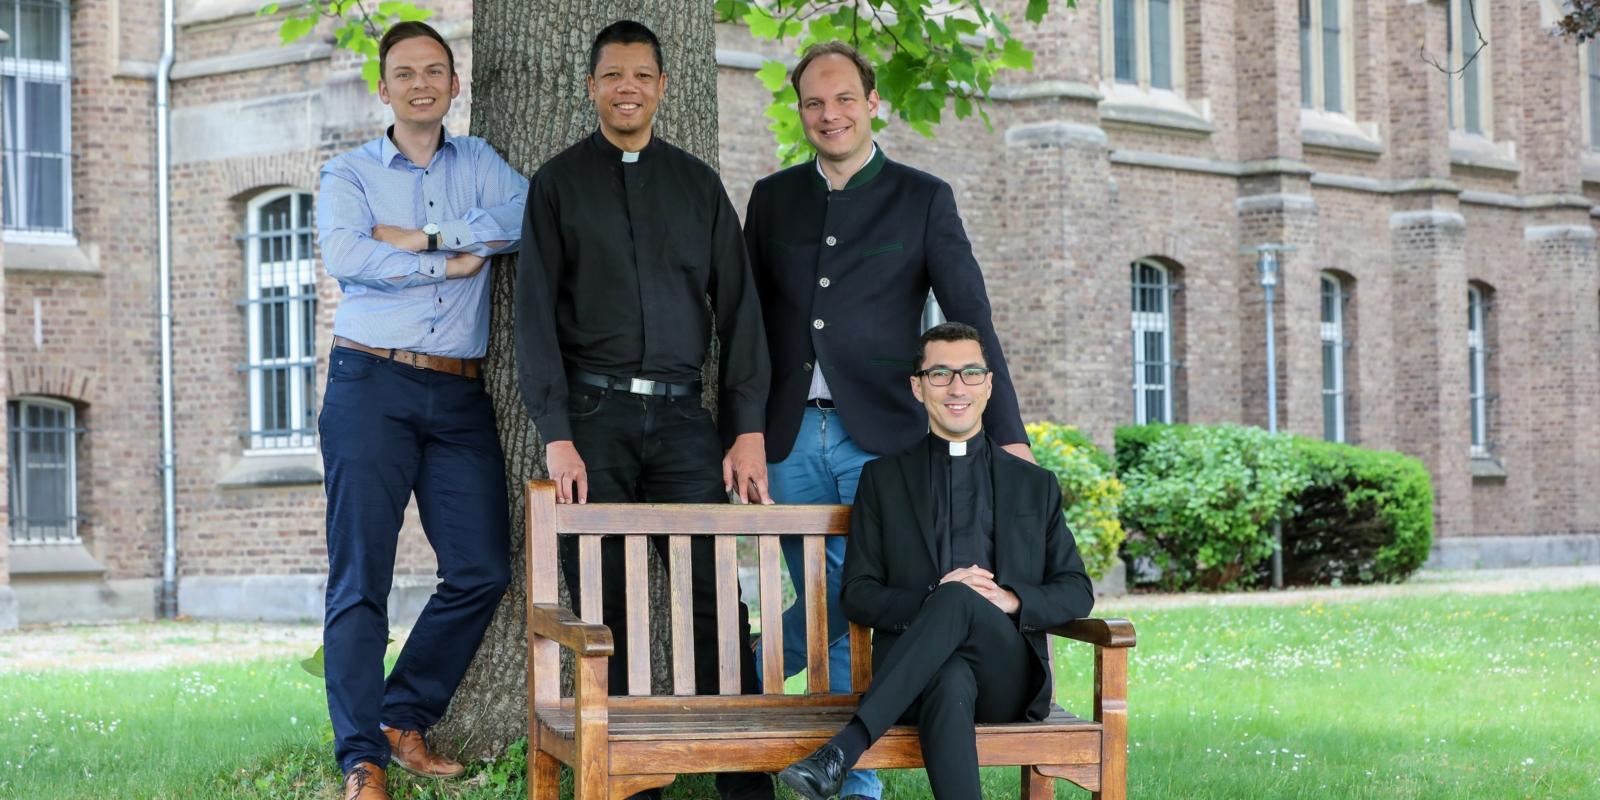 Werden am 12. Juni zu Diakonen geweiht: Christoph Schmitz, Luis Alberto Aquino Mercedes, Sebastian Appolt und Daniel Florentino Barbosa (von links nach rechts)